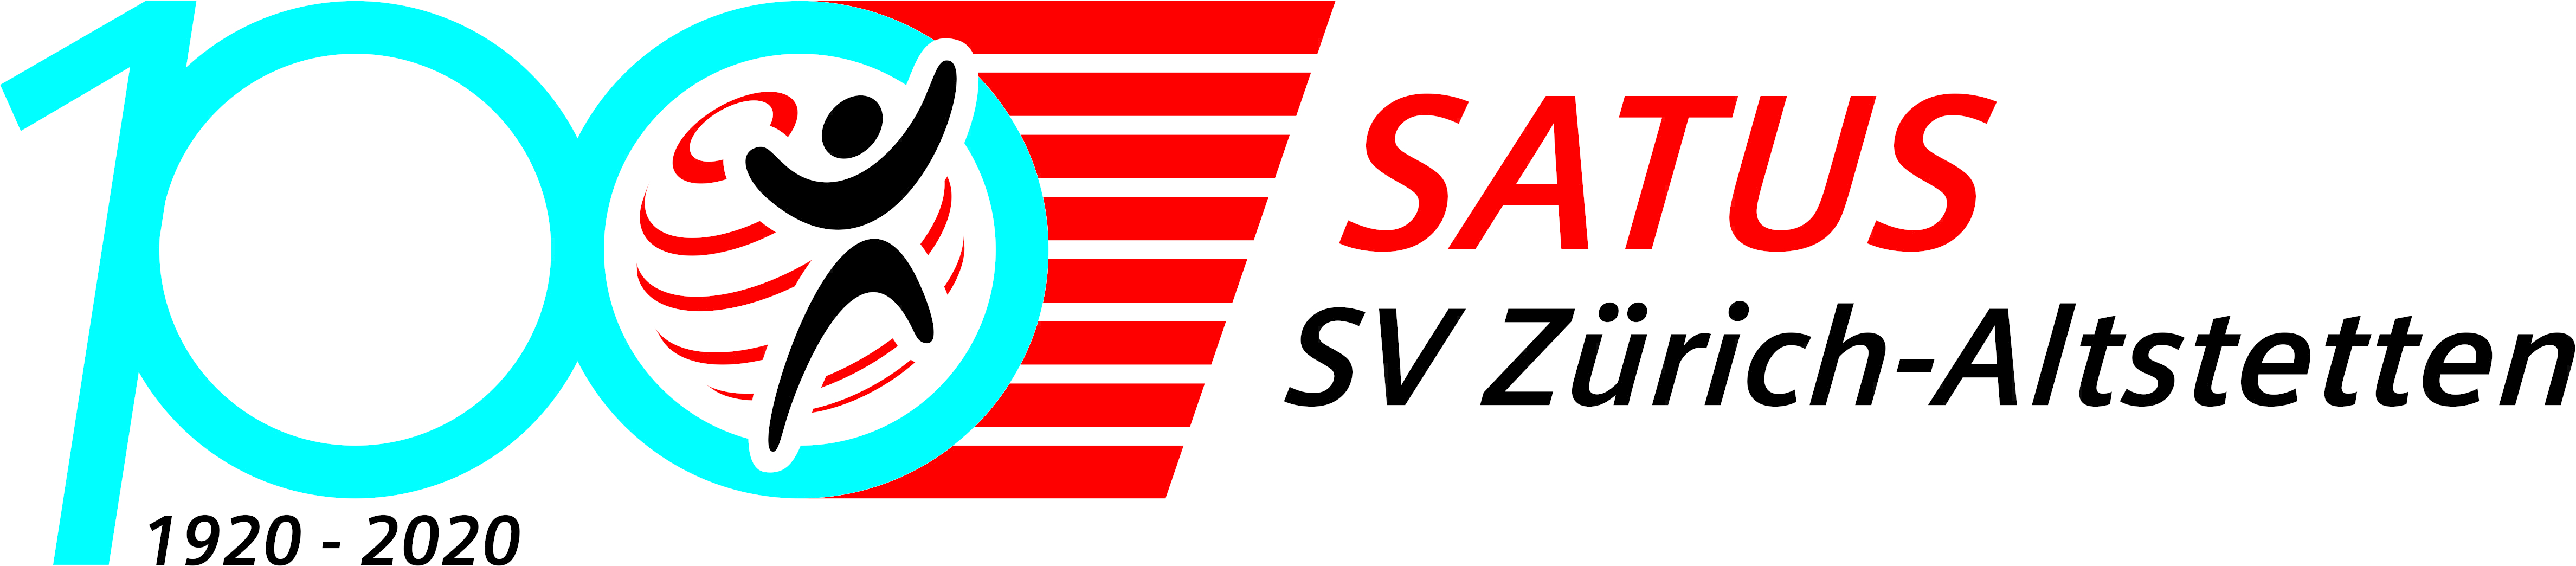 100 Jahre SATUS SV Altstetten - SATUS - Schweizer Arbeiter-, Turn- und Sportverband